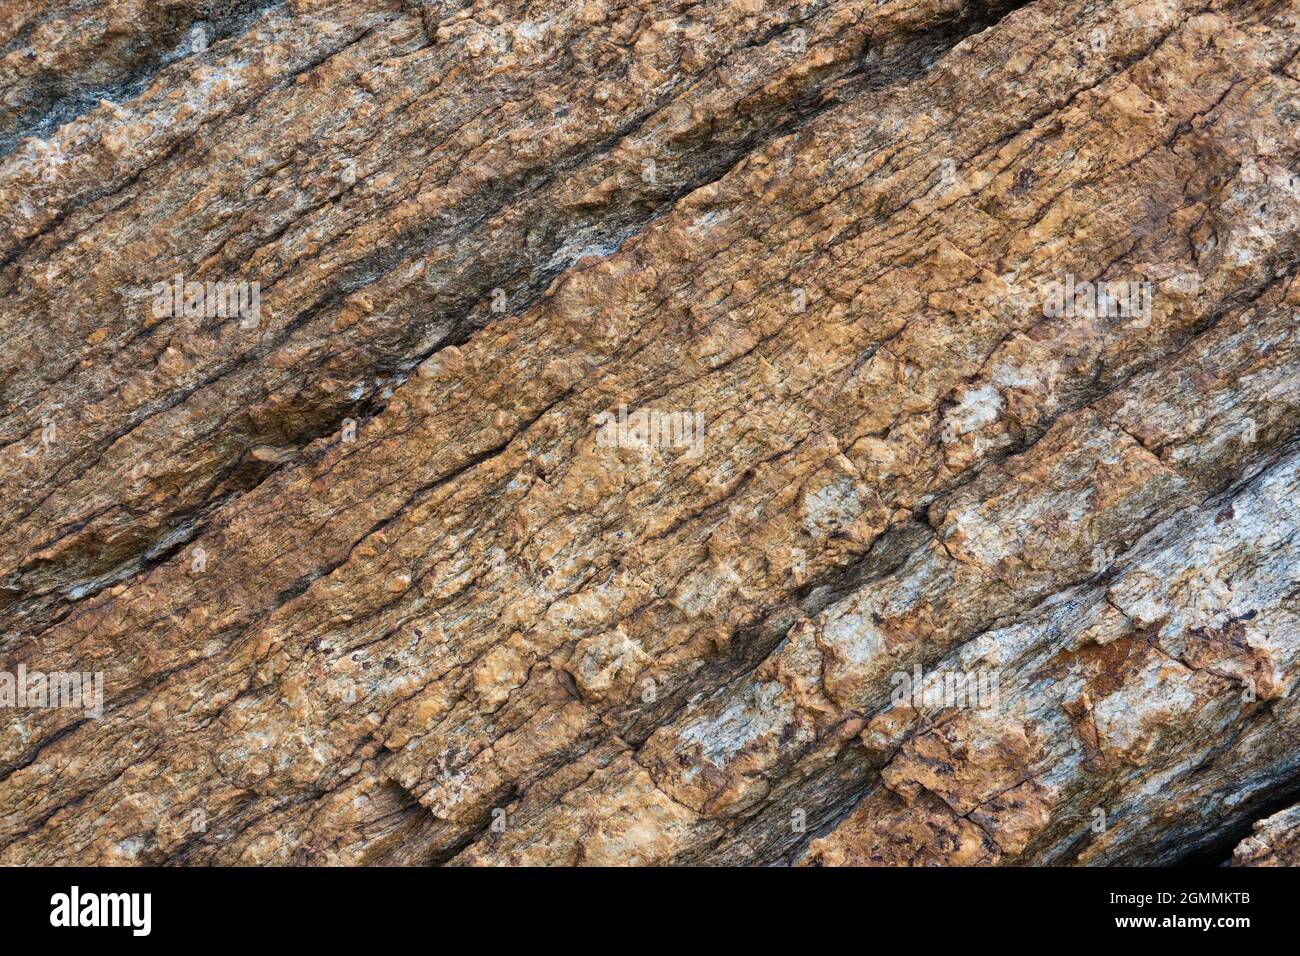 Closeup of brown layered rock Stock Photo